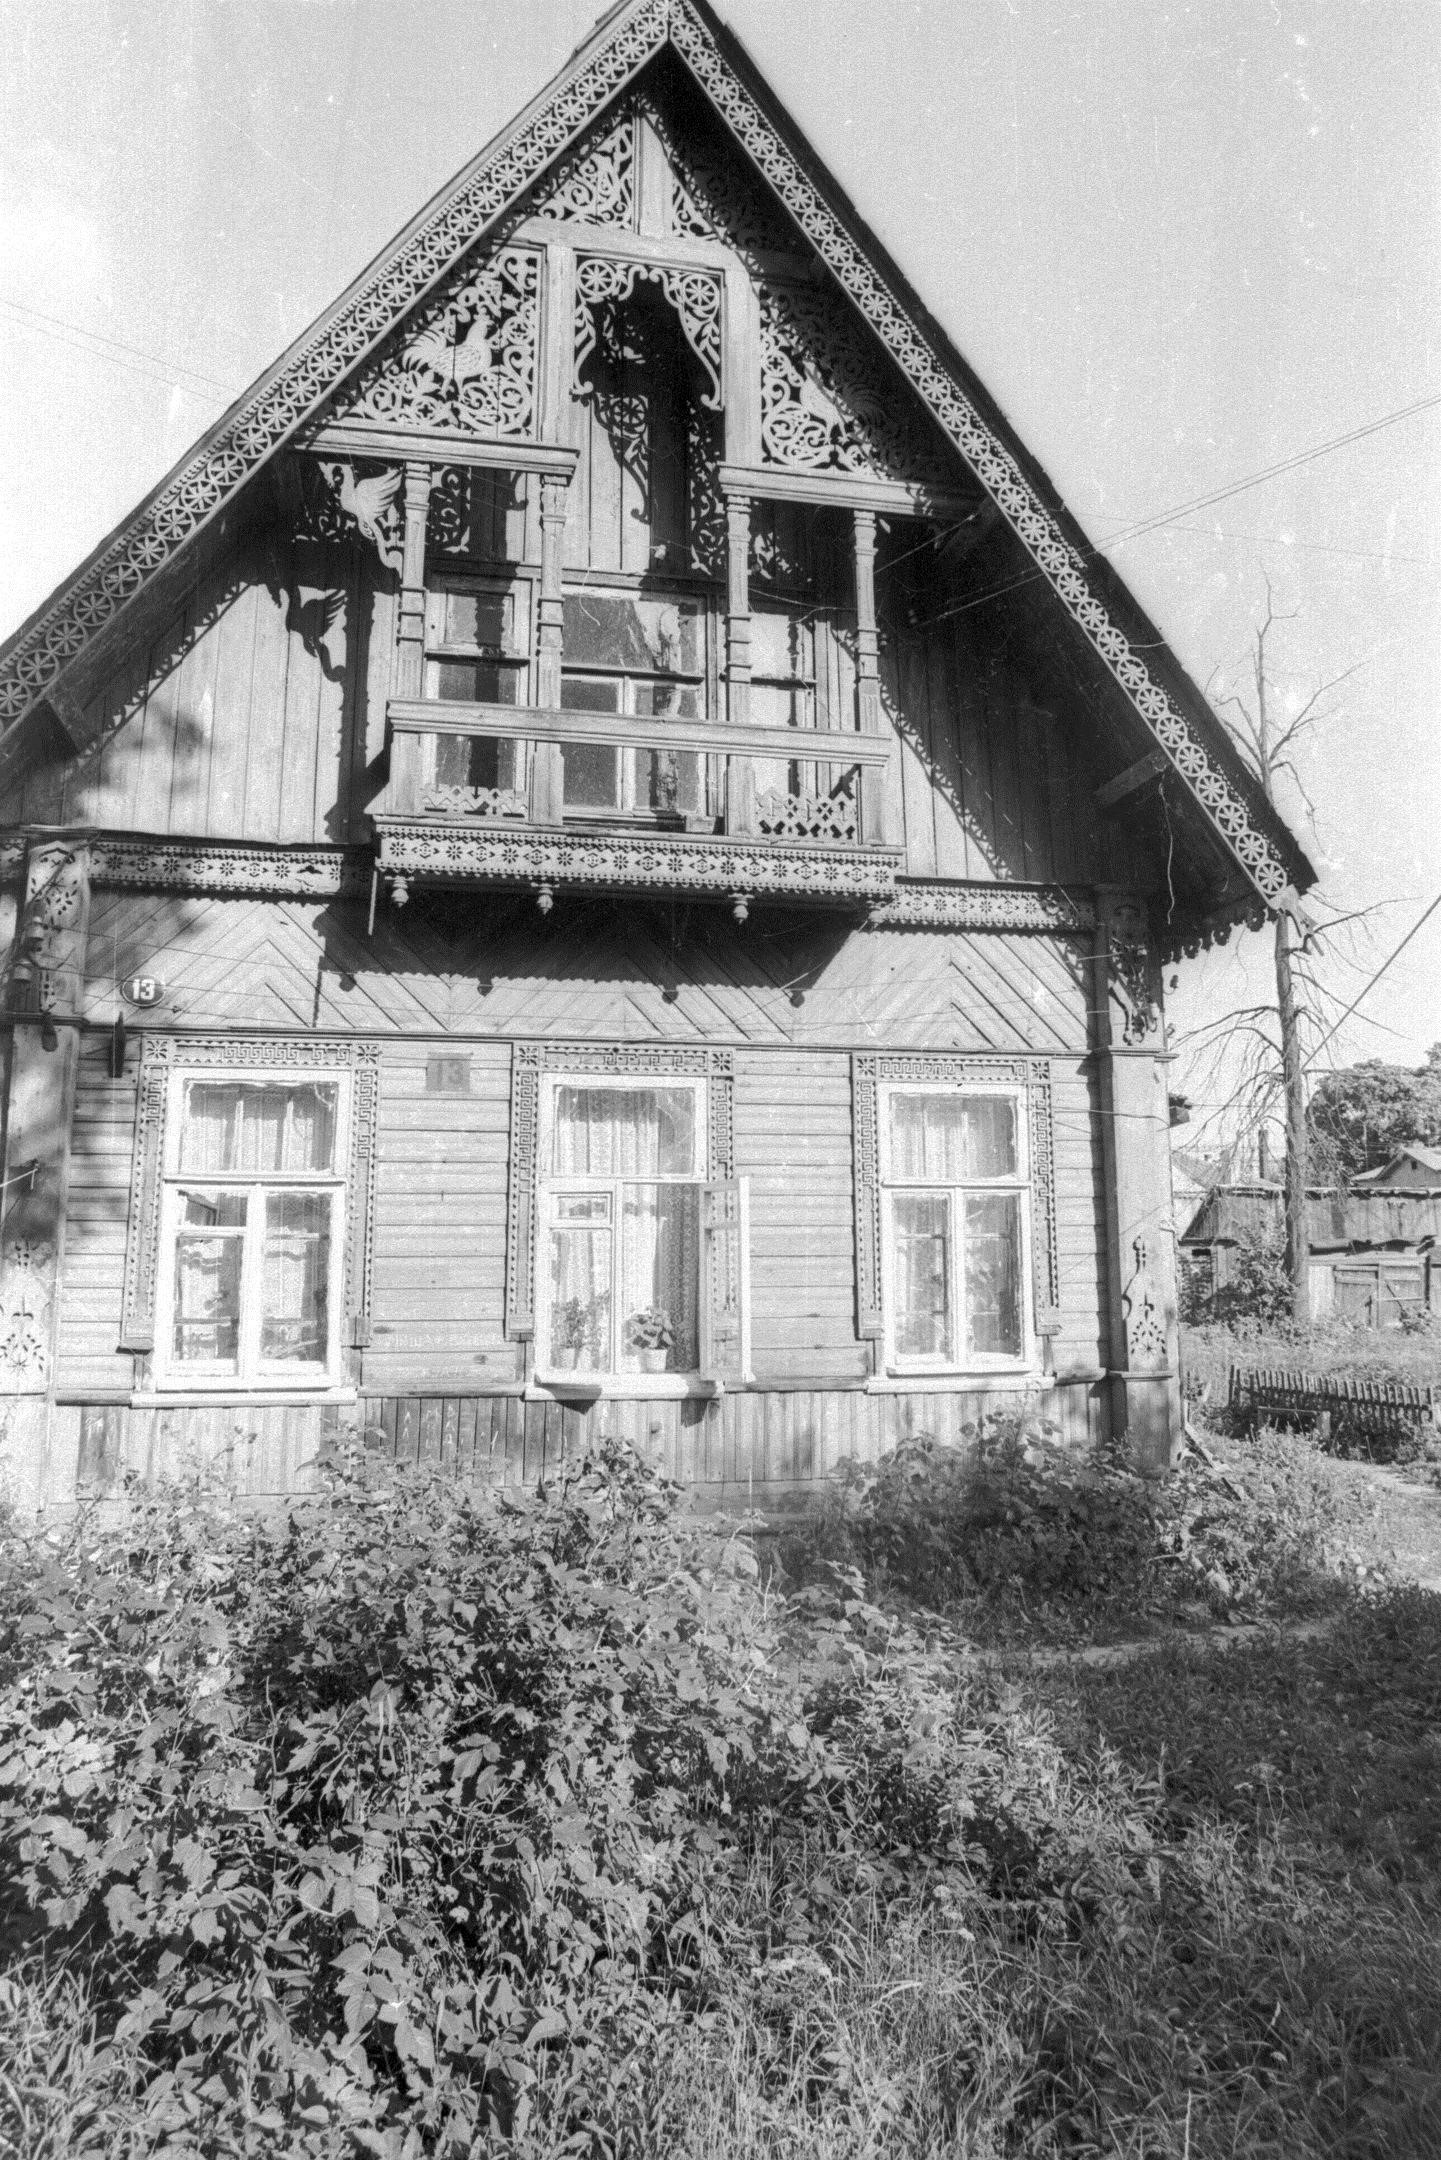 Дом № 13-а на улице Урицкого.
Так называемый «Дом с петухами». Утрачен